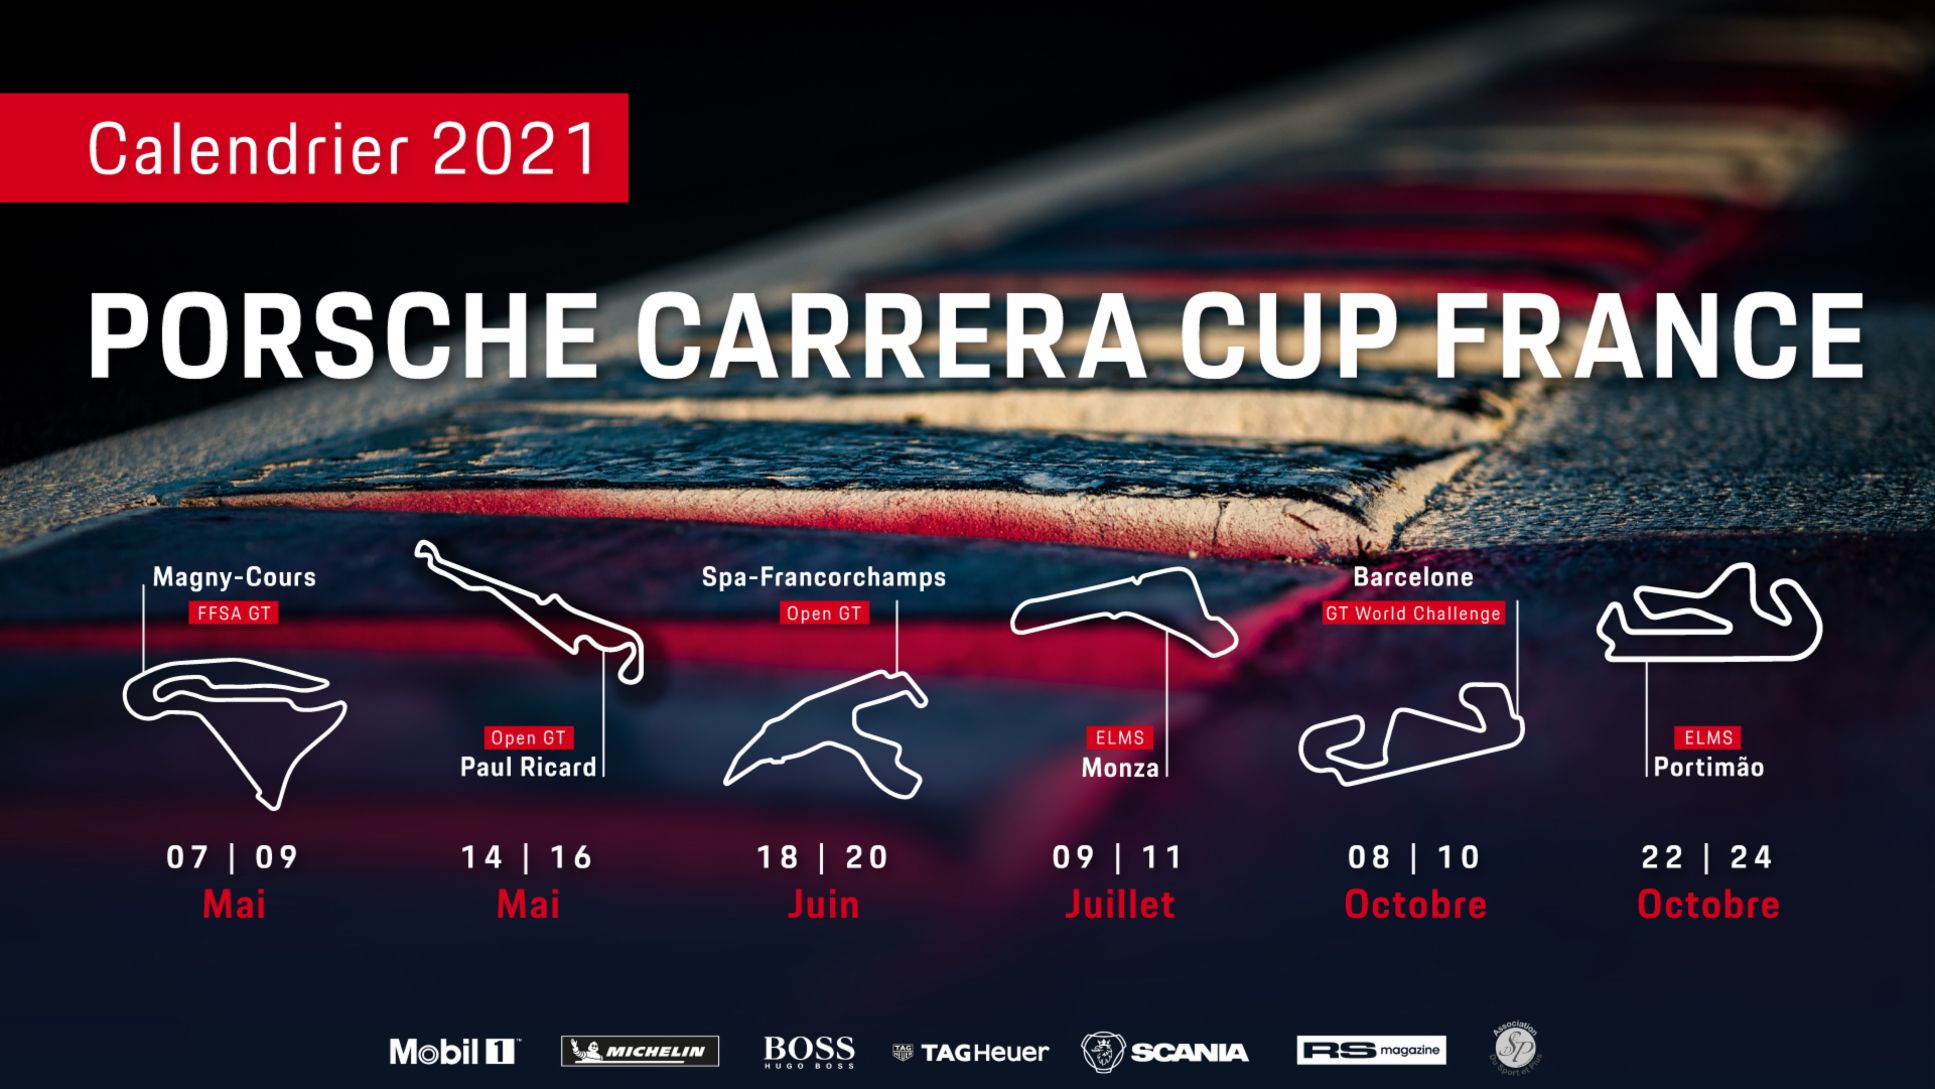 Calendrier de la Porsche Carrera Cup France 2021